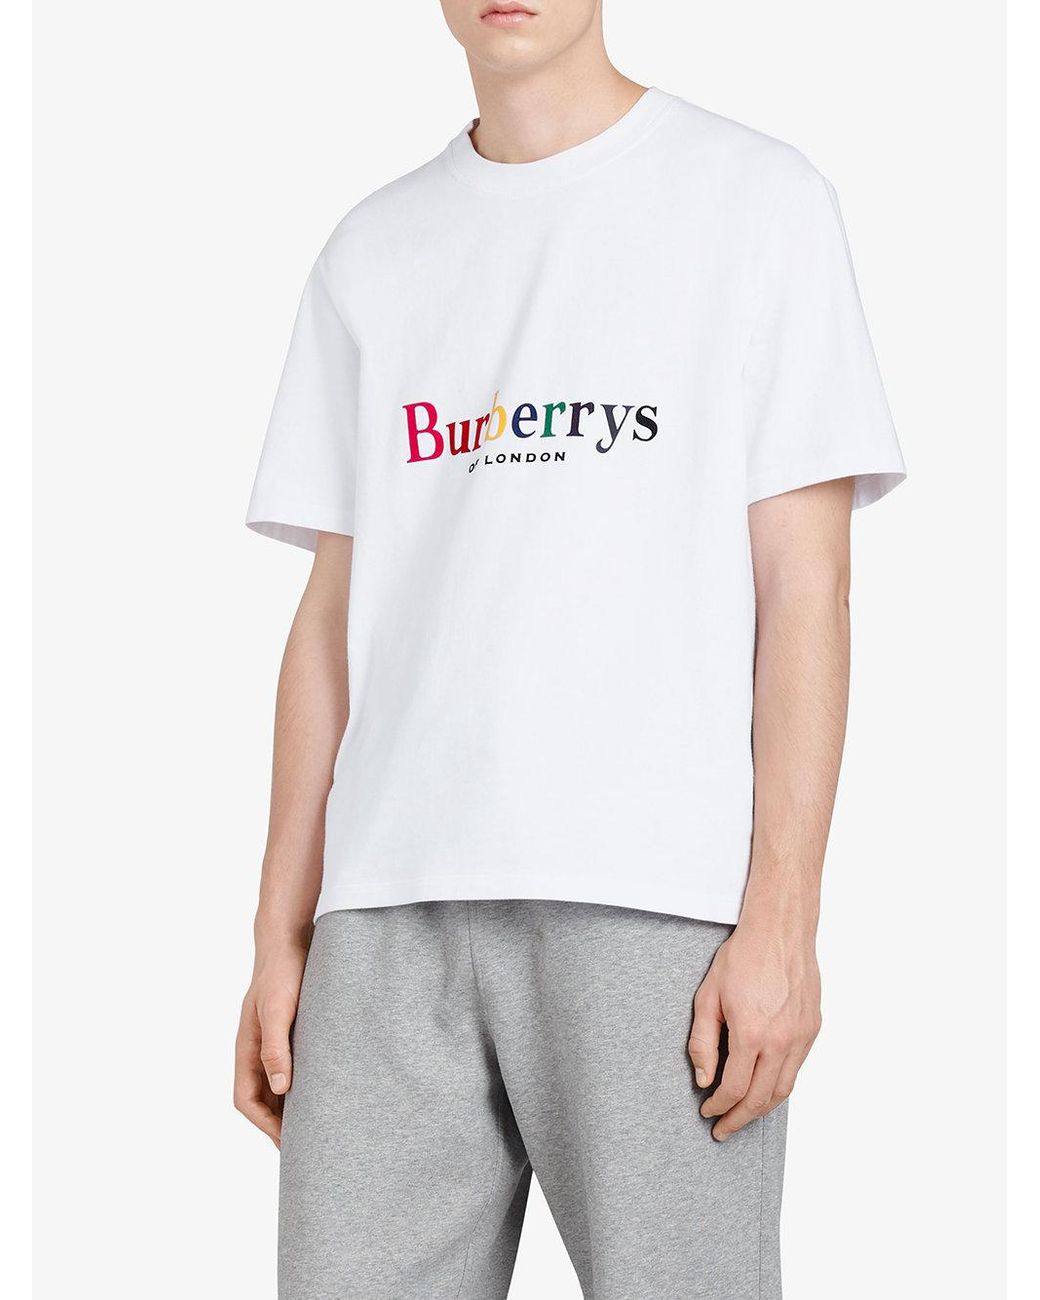 Burberry Reissued 1995 Rainbow Logo T-shirt in White for Men | Lyst UK